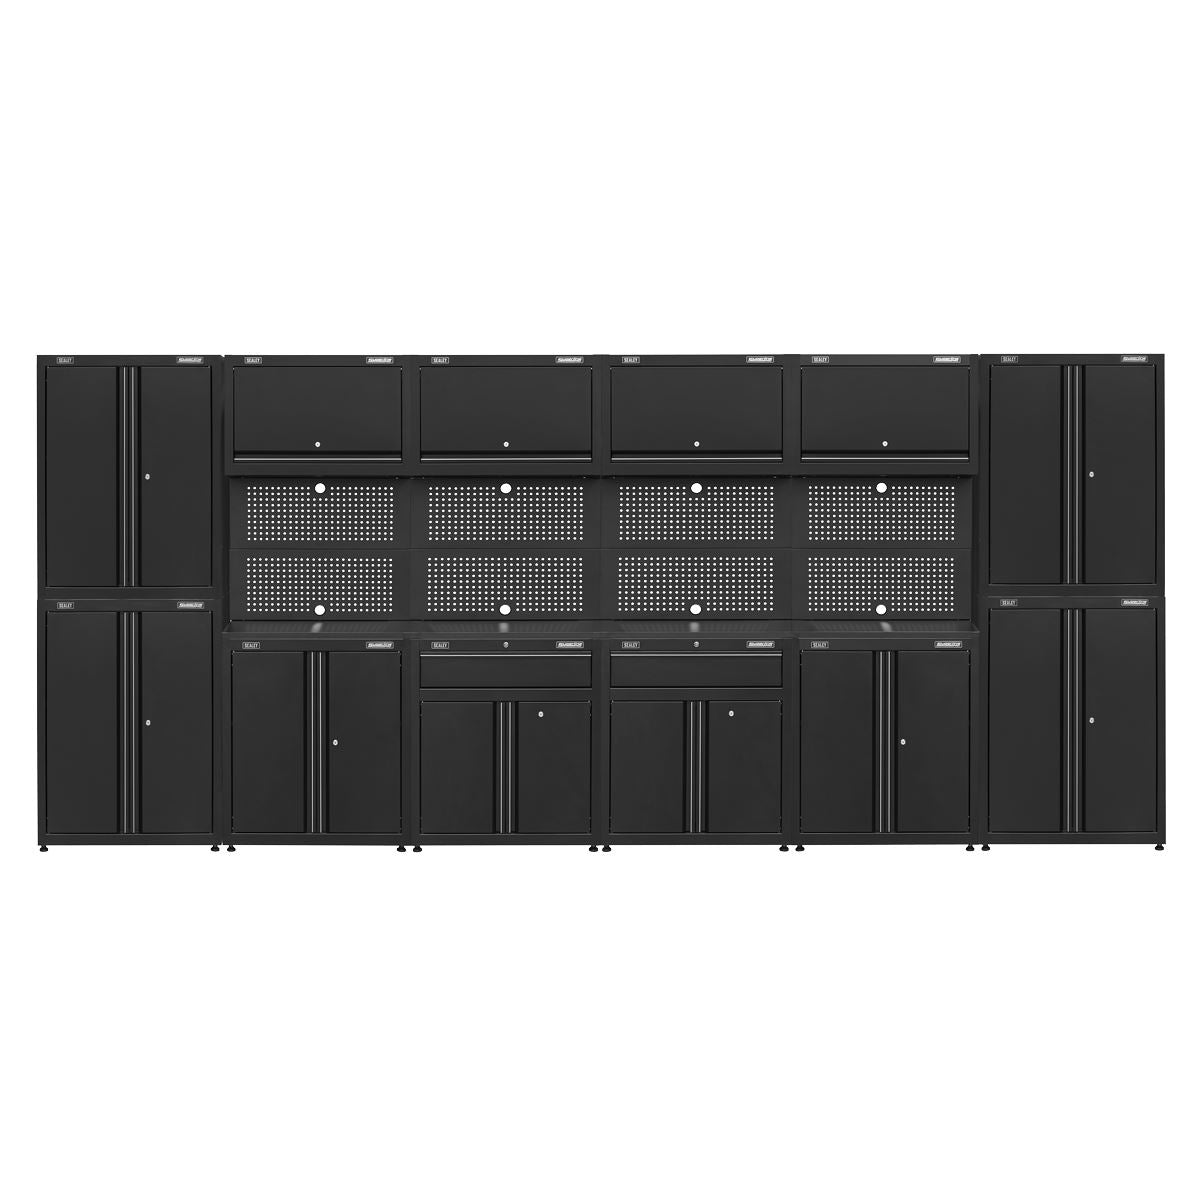 Sealey Superline Pro Rapid-Fit 4.6m Modular Garage Storage System